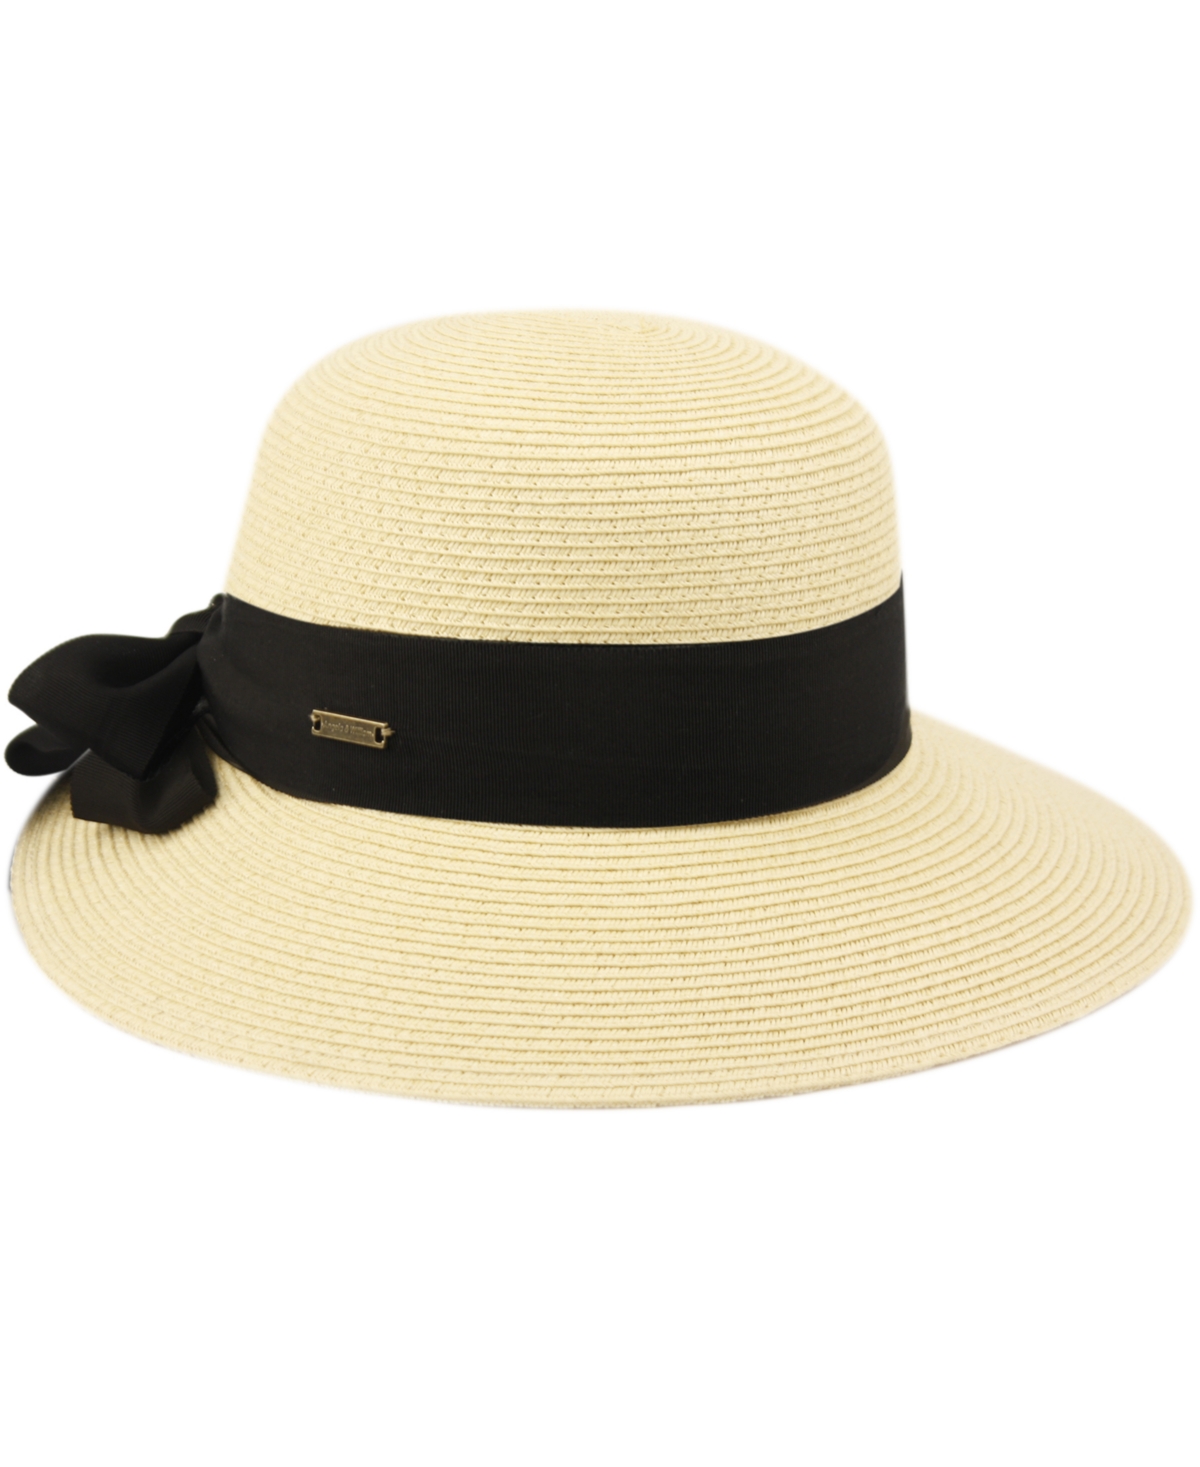 Shop Angela & William Women's Brimmed Beach Sun Straw Hat In Black